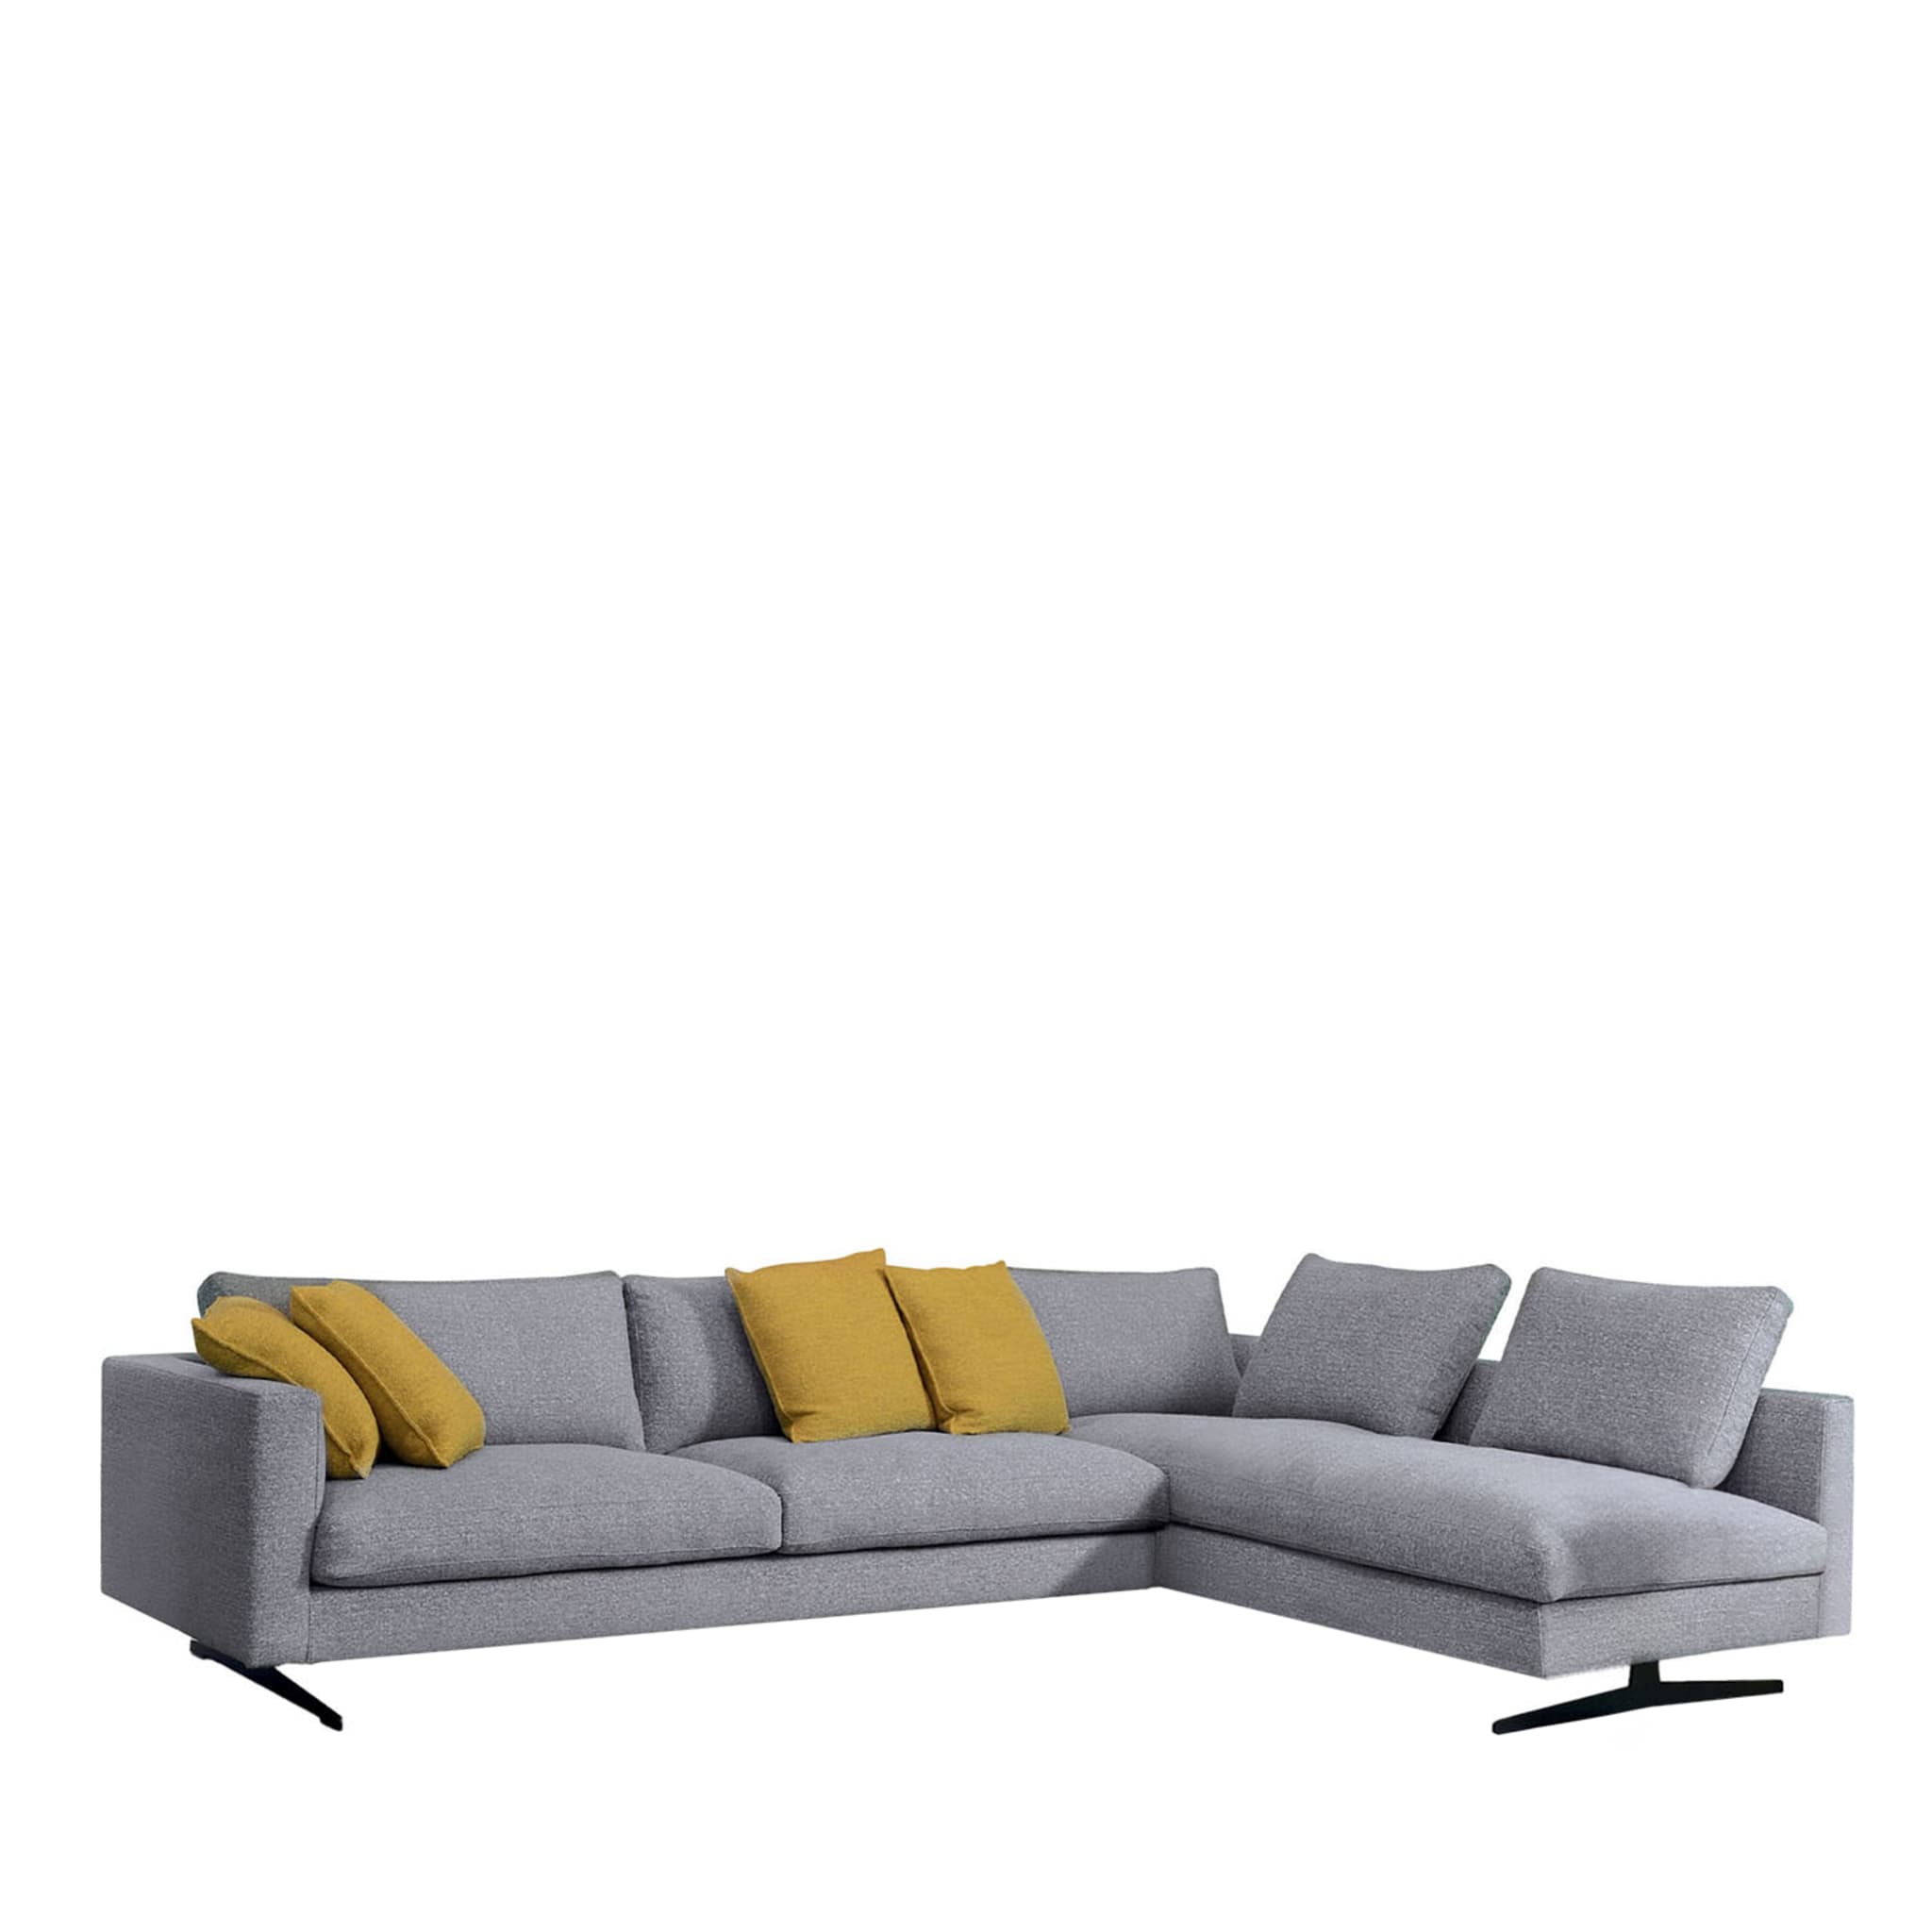 Ikon Grey Sofa - Main view